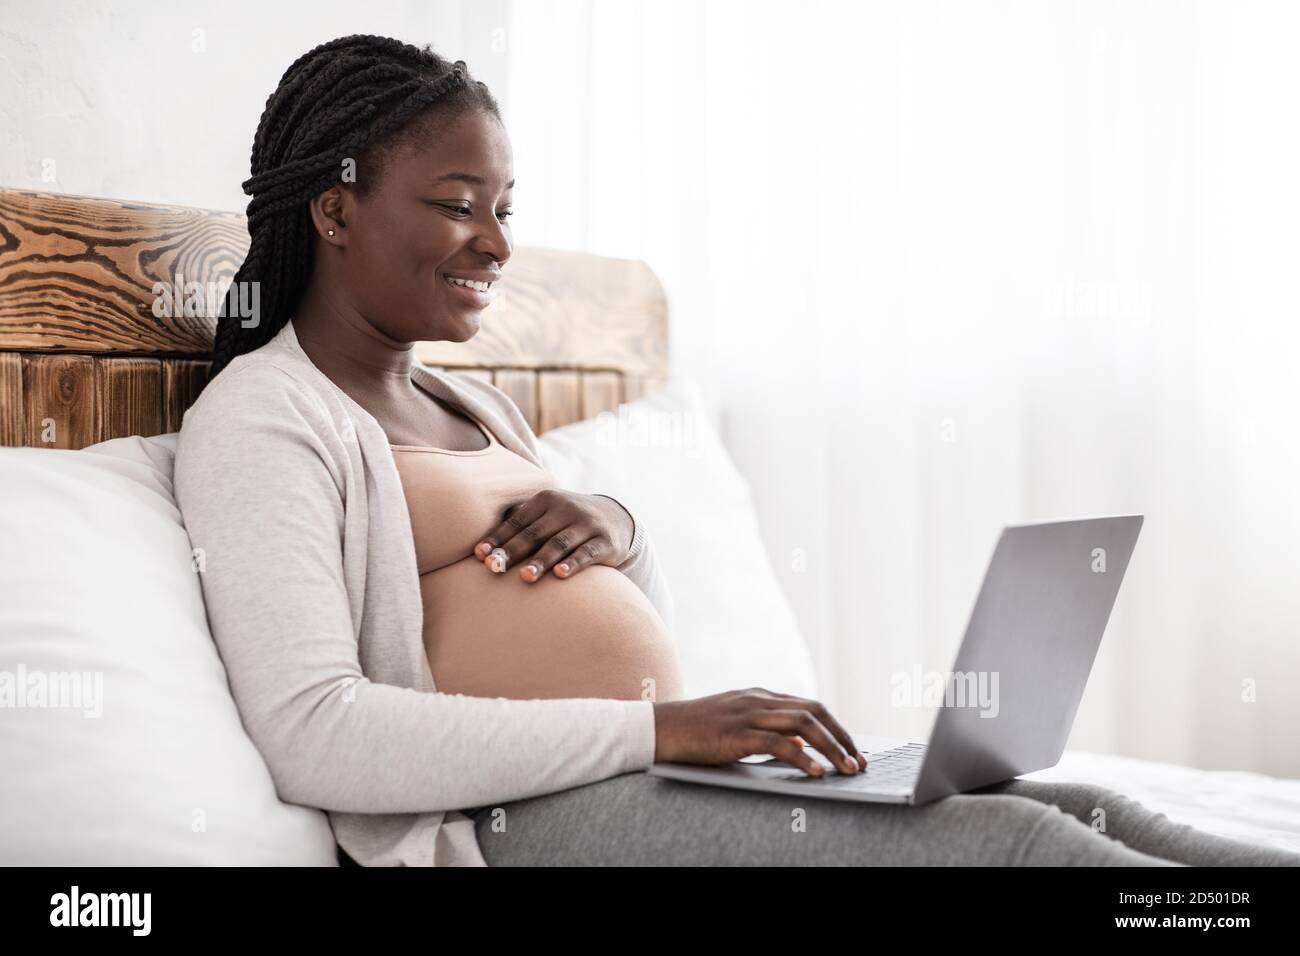 Charmante femme enceinte détente avec son ordinateur portable, de la navigation ou de discuter avec des amis en ligne, assis sur le lit, panorama avec l'espace vide Banque D'Images